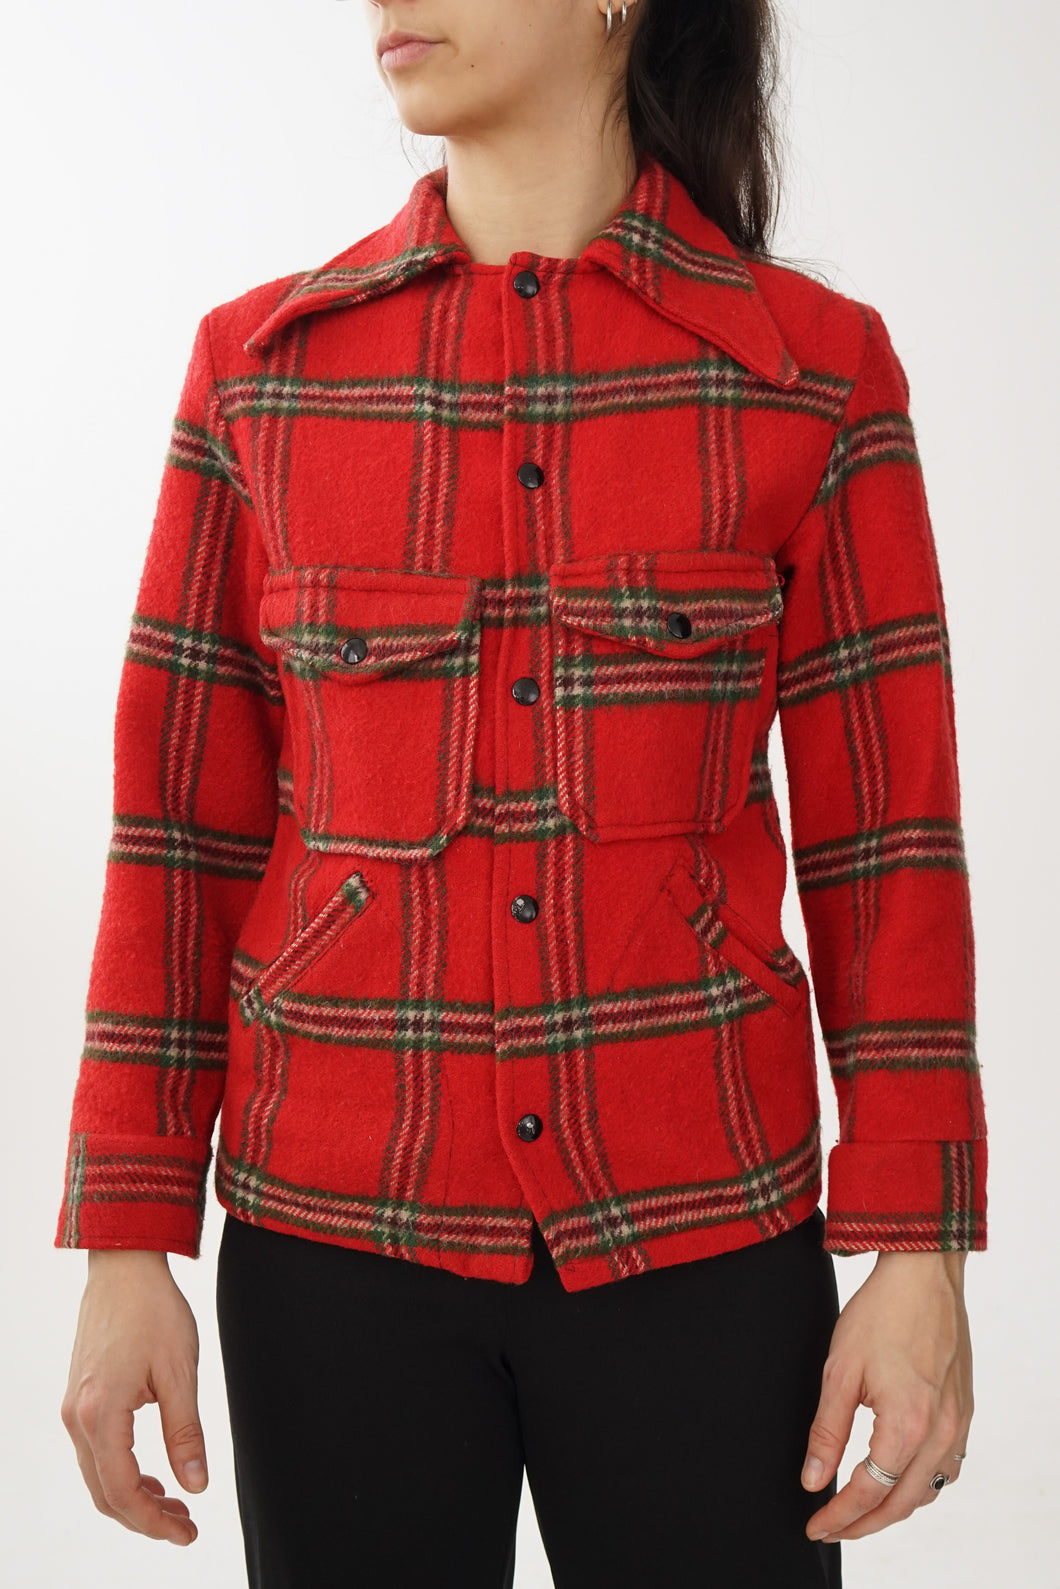 Veste vintage en laine Fait au Canada tartan rouge et vert pour femme taille S